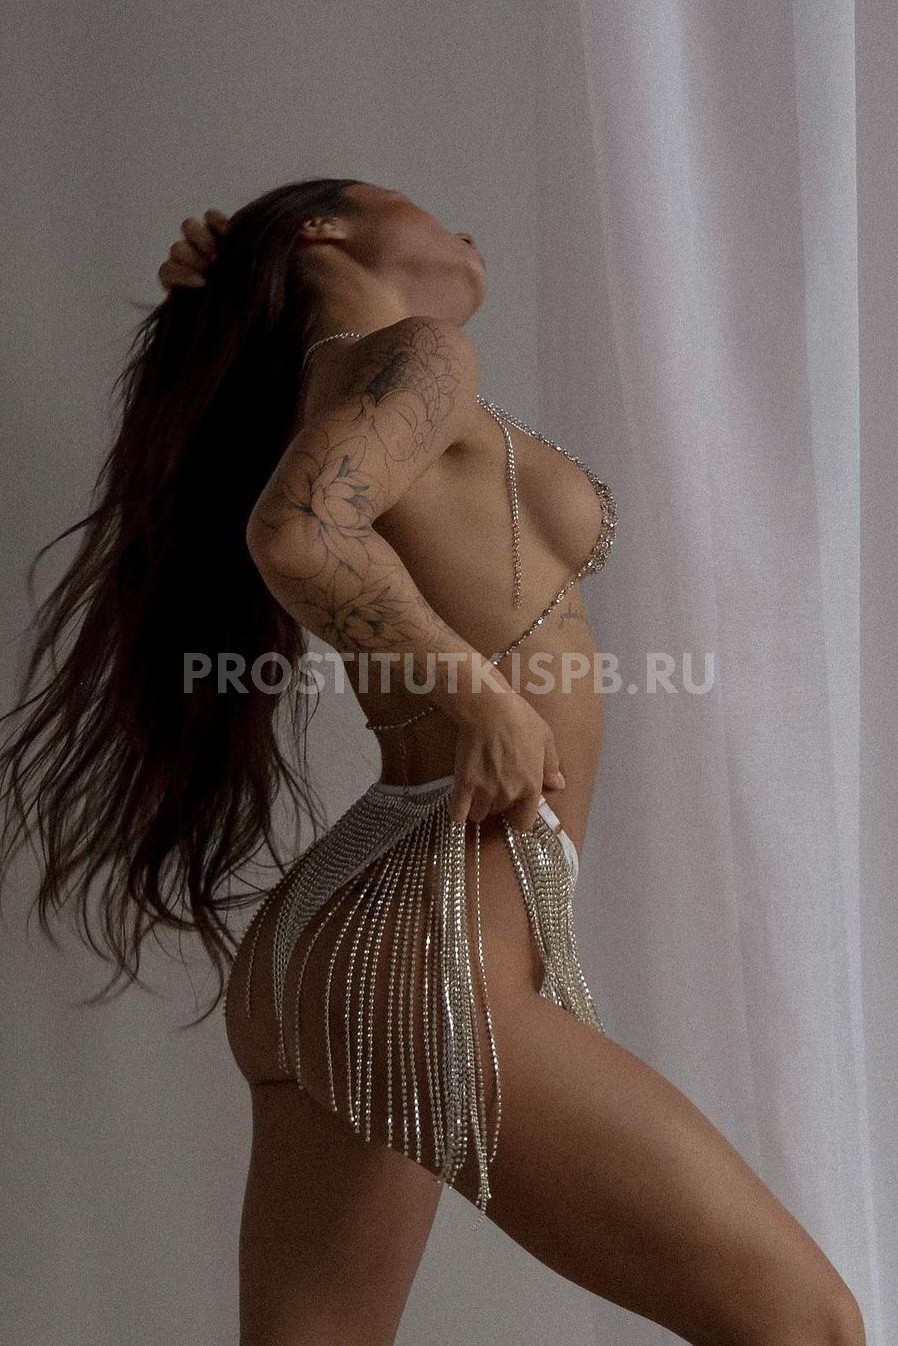 ПроституткаТая27000 рублей/час – фото3